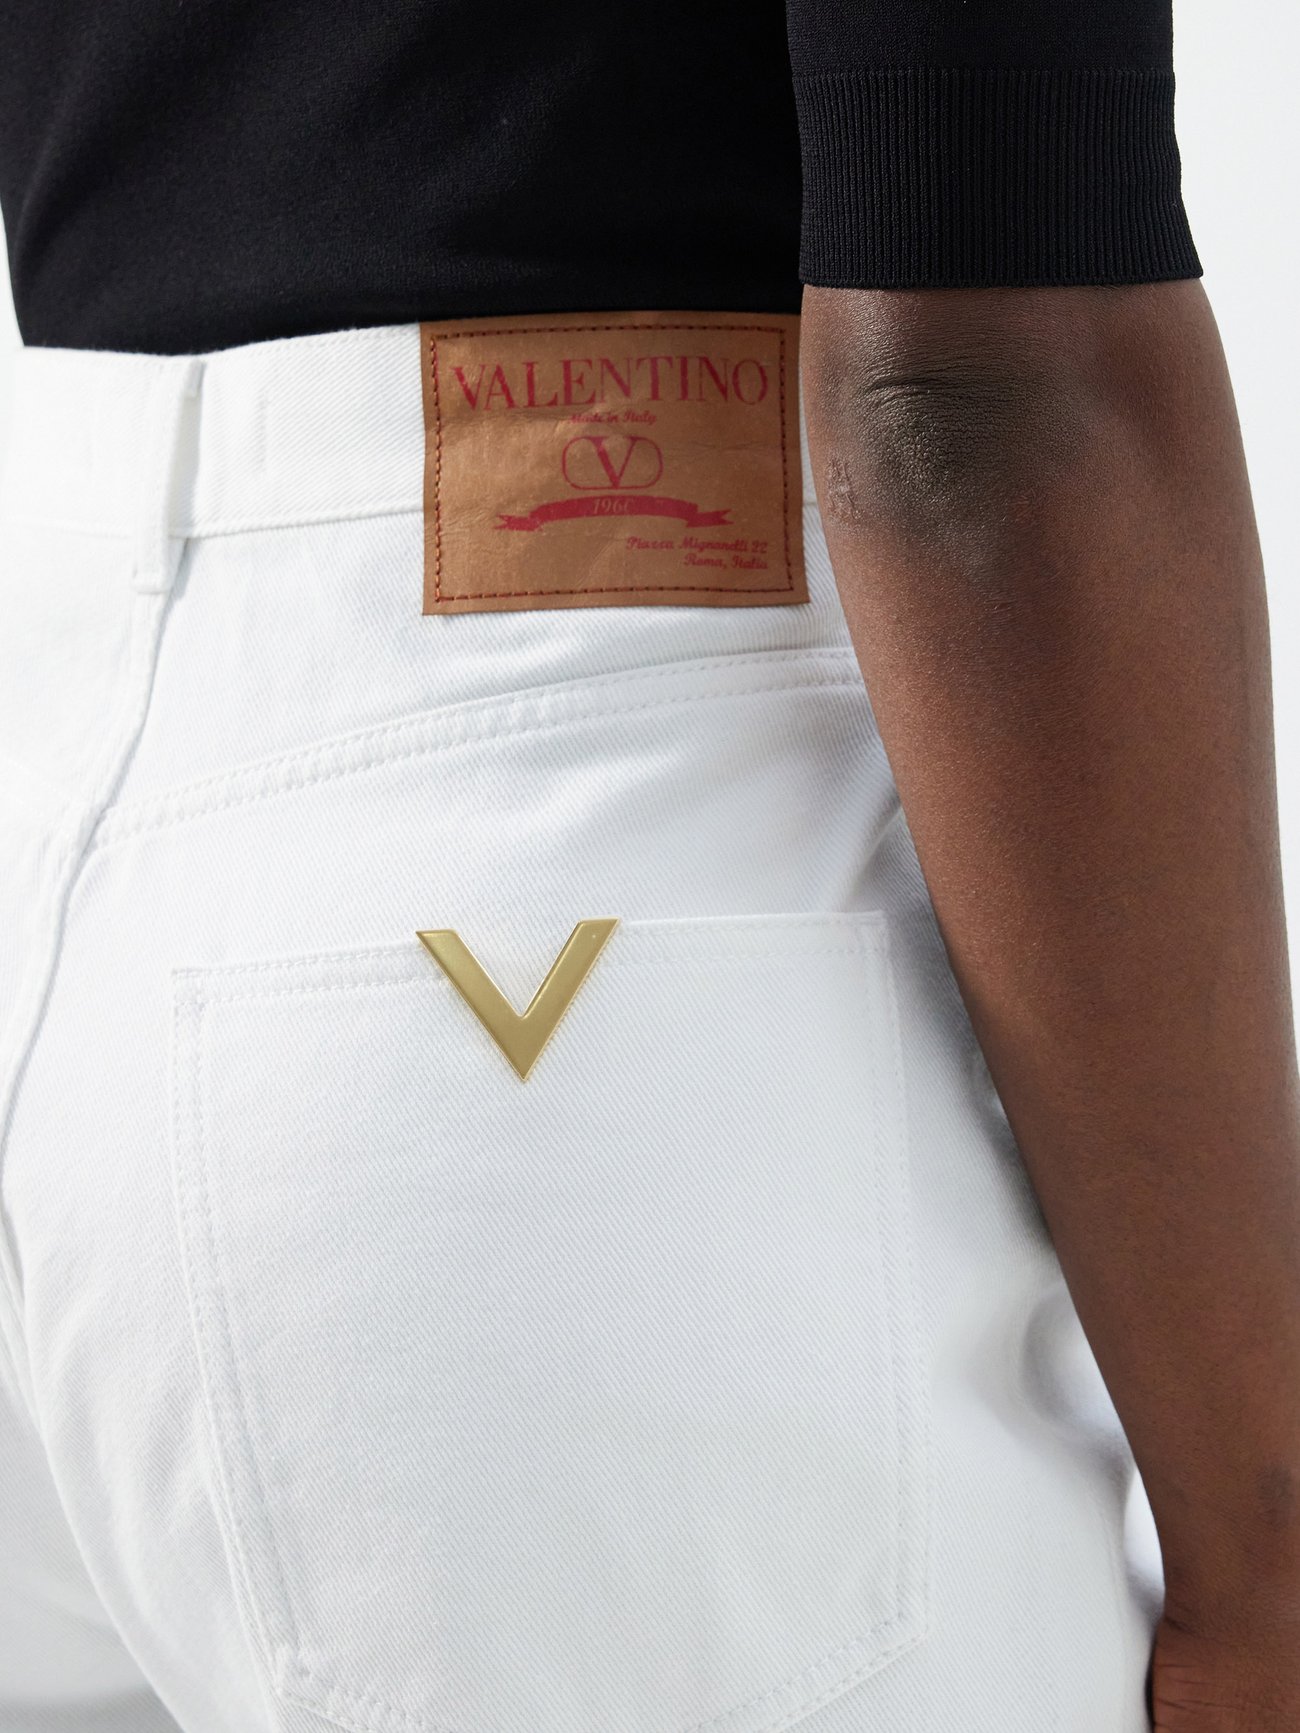 White V-Logo wide-leg jeans, Valentino Garavani